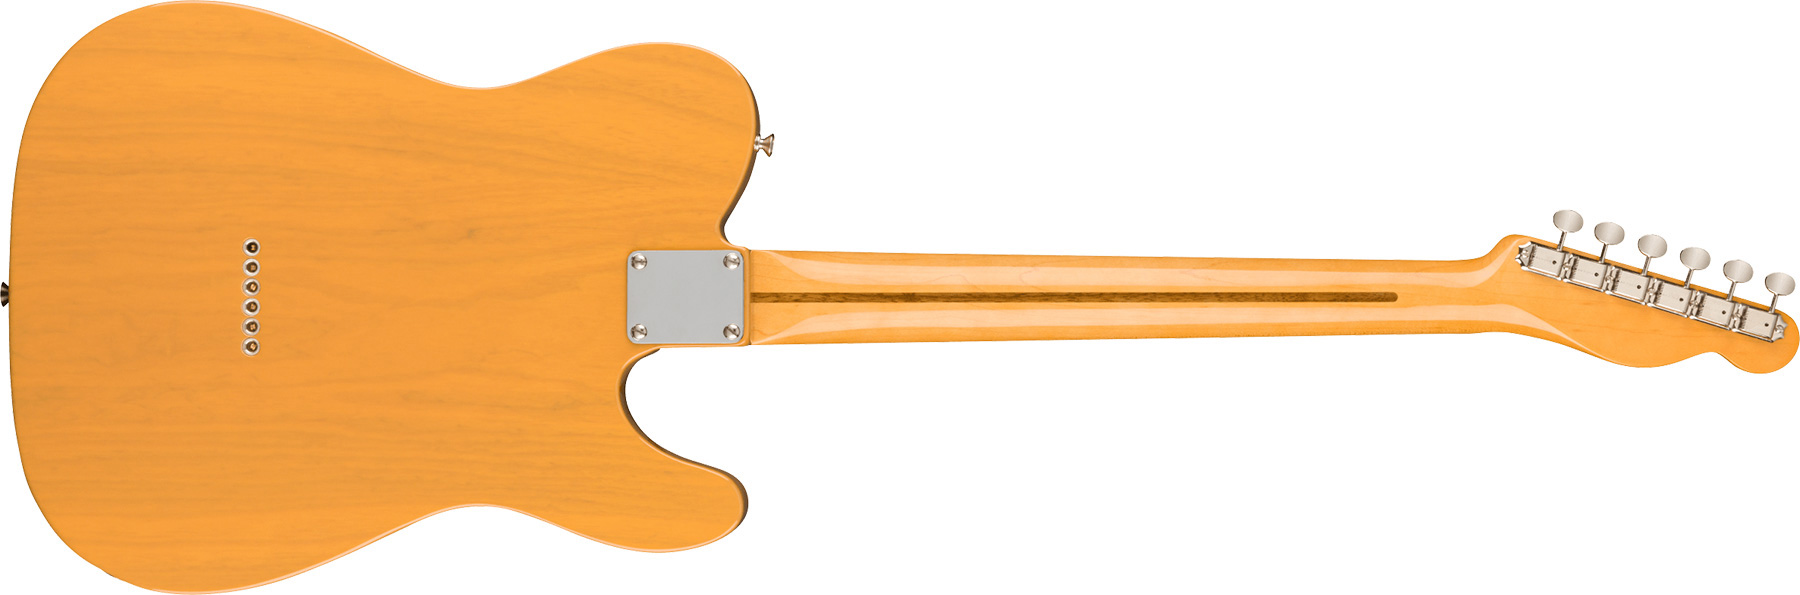 Fender Tele 1951 American Vintage Ii Lh Gaucher 2s Ht Mn - Butterscotch Blonde - Linkshandige elektrische gitaar - Variation 1